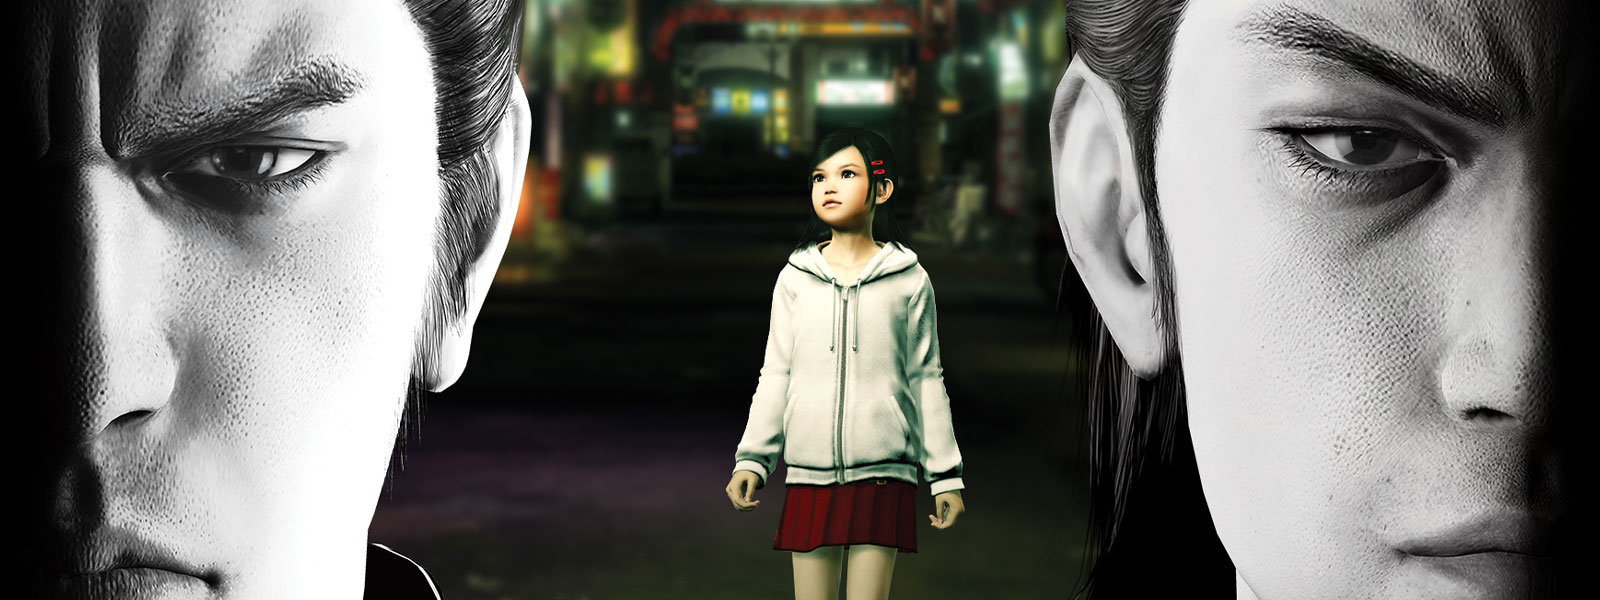 2 人の『龍が如く』のキャラクターが沈痛な面持ちで前方を見つめている。その背景にある街に小さな女の子が佇んでいる。